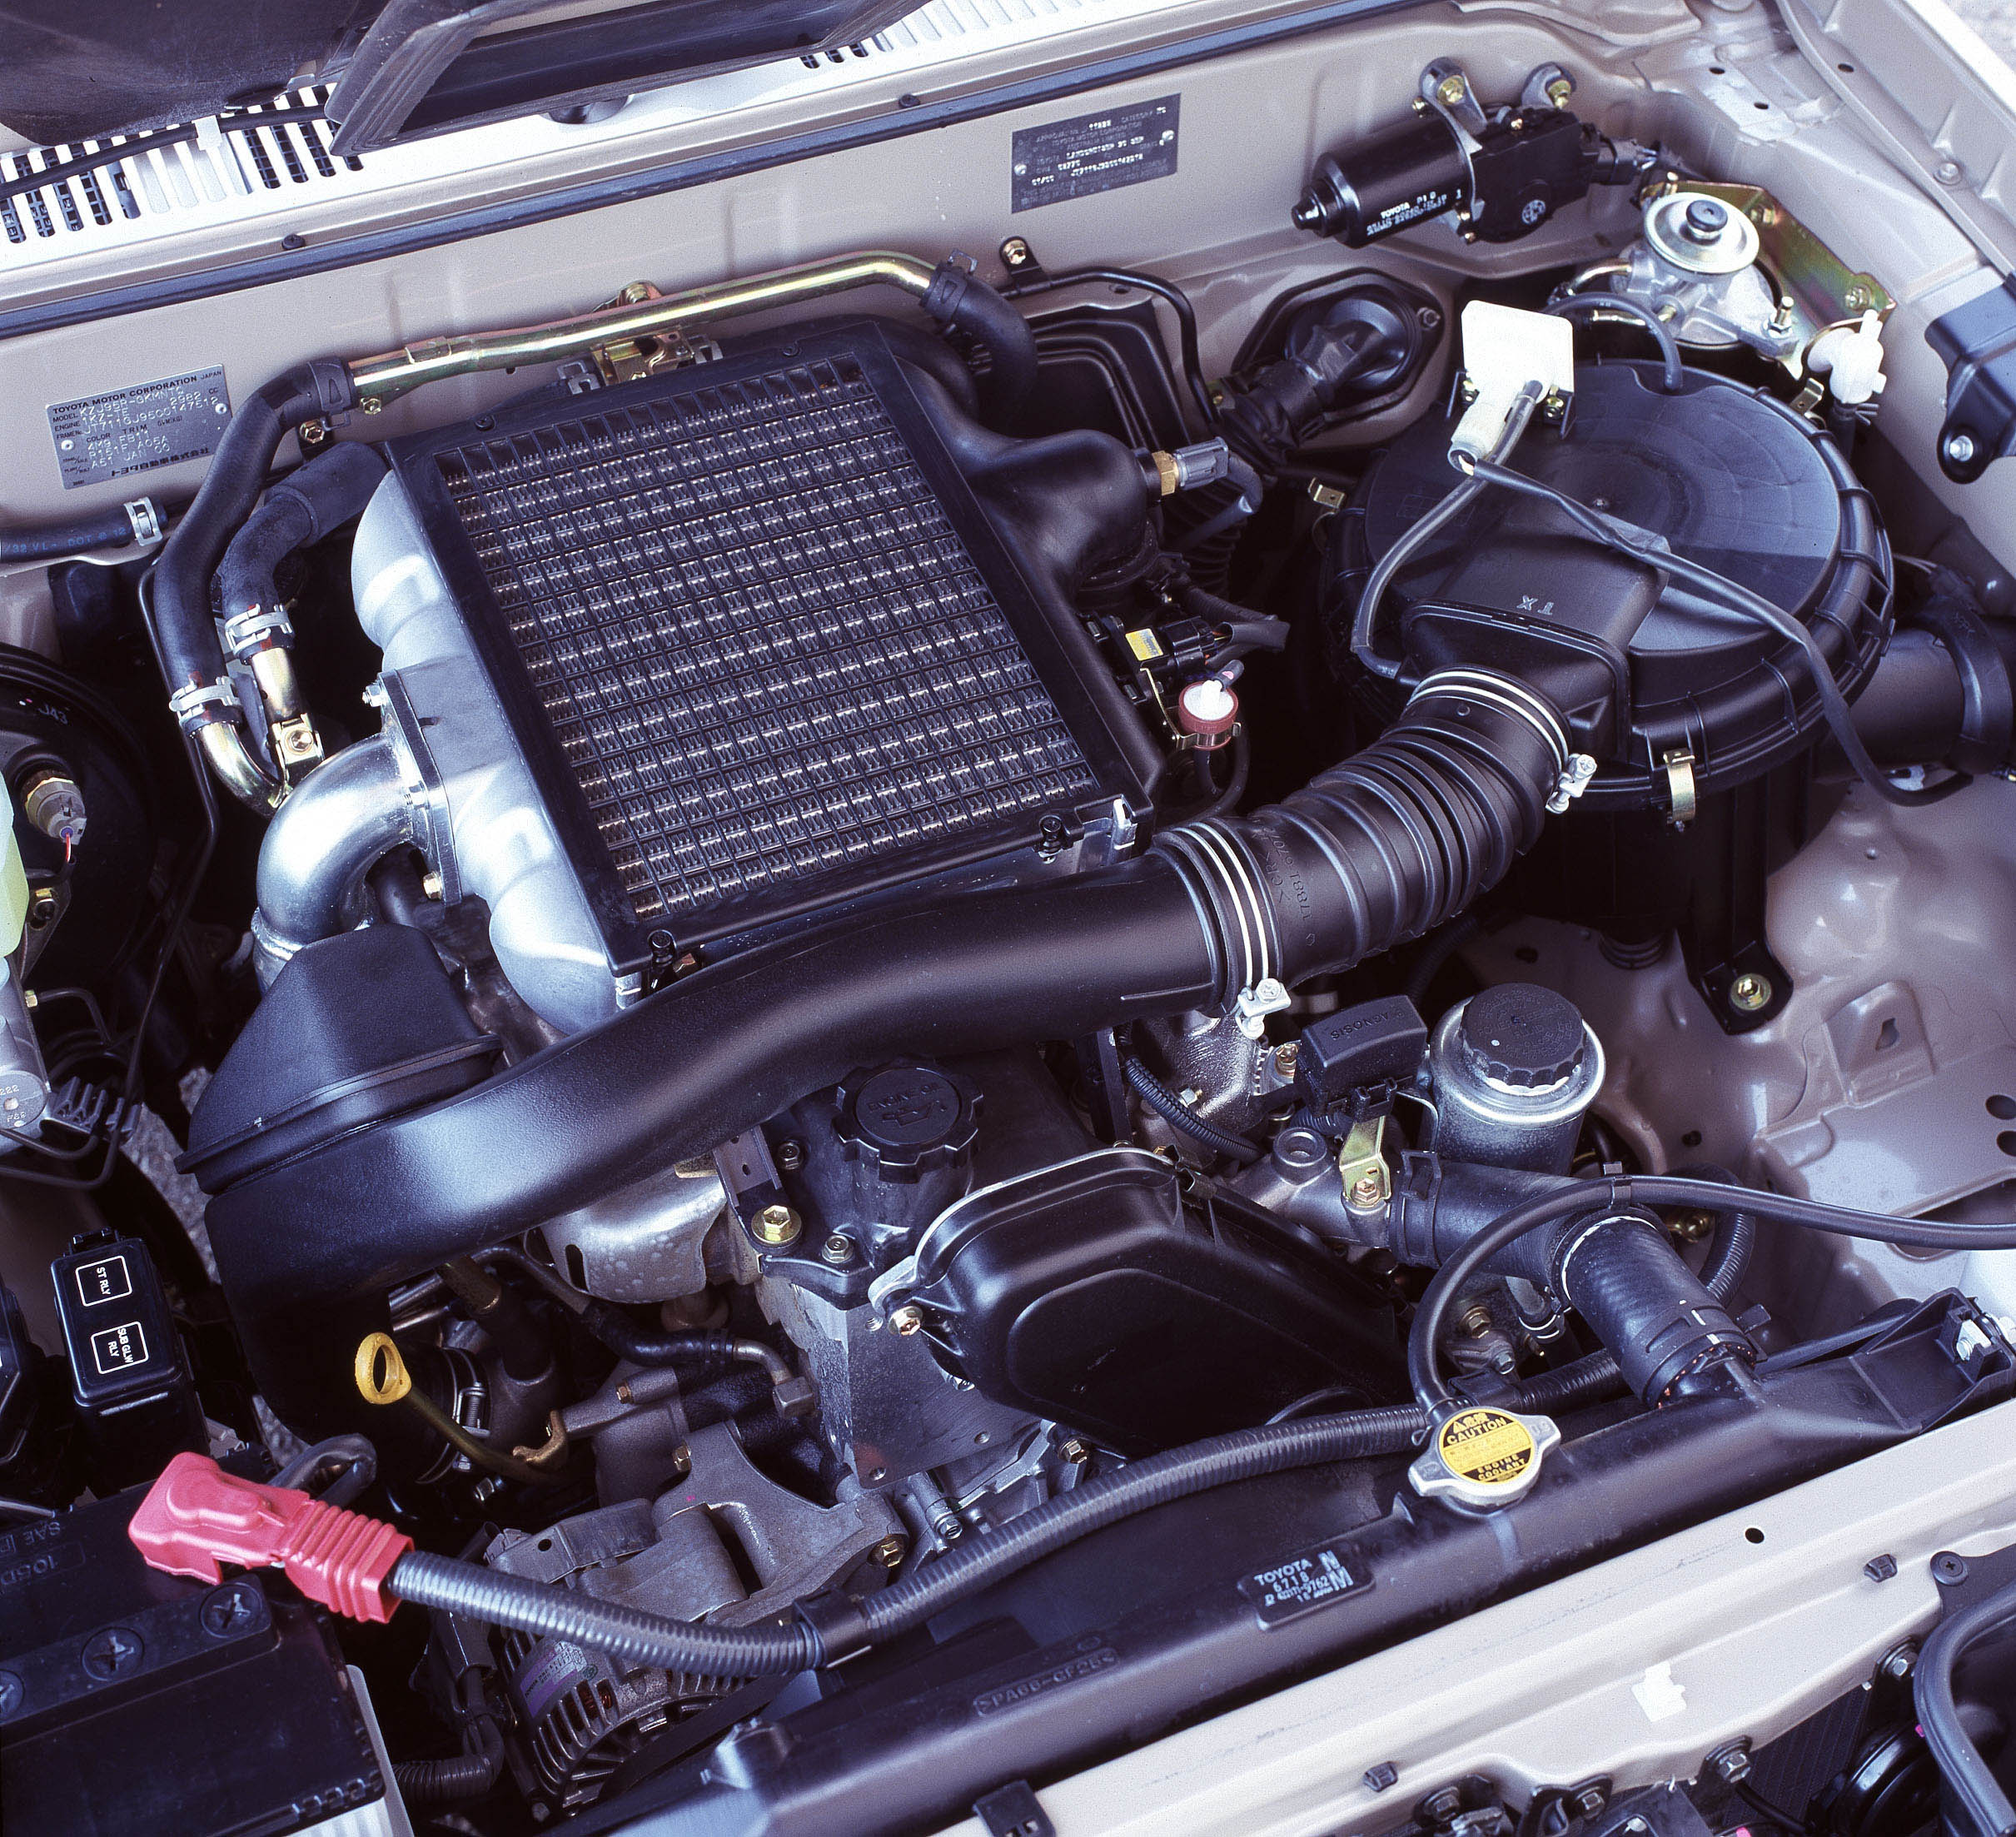 1KZ-TE Toyota engine